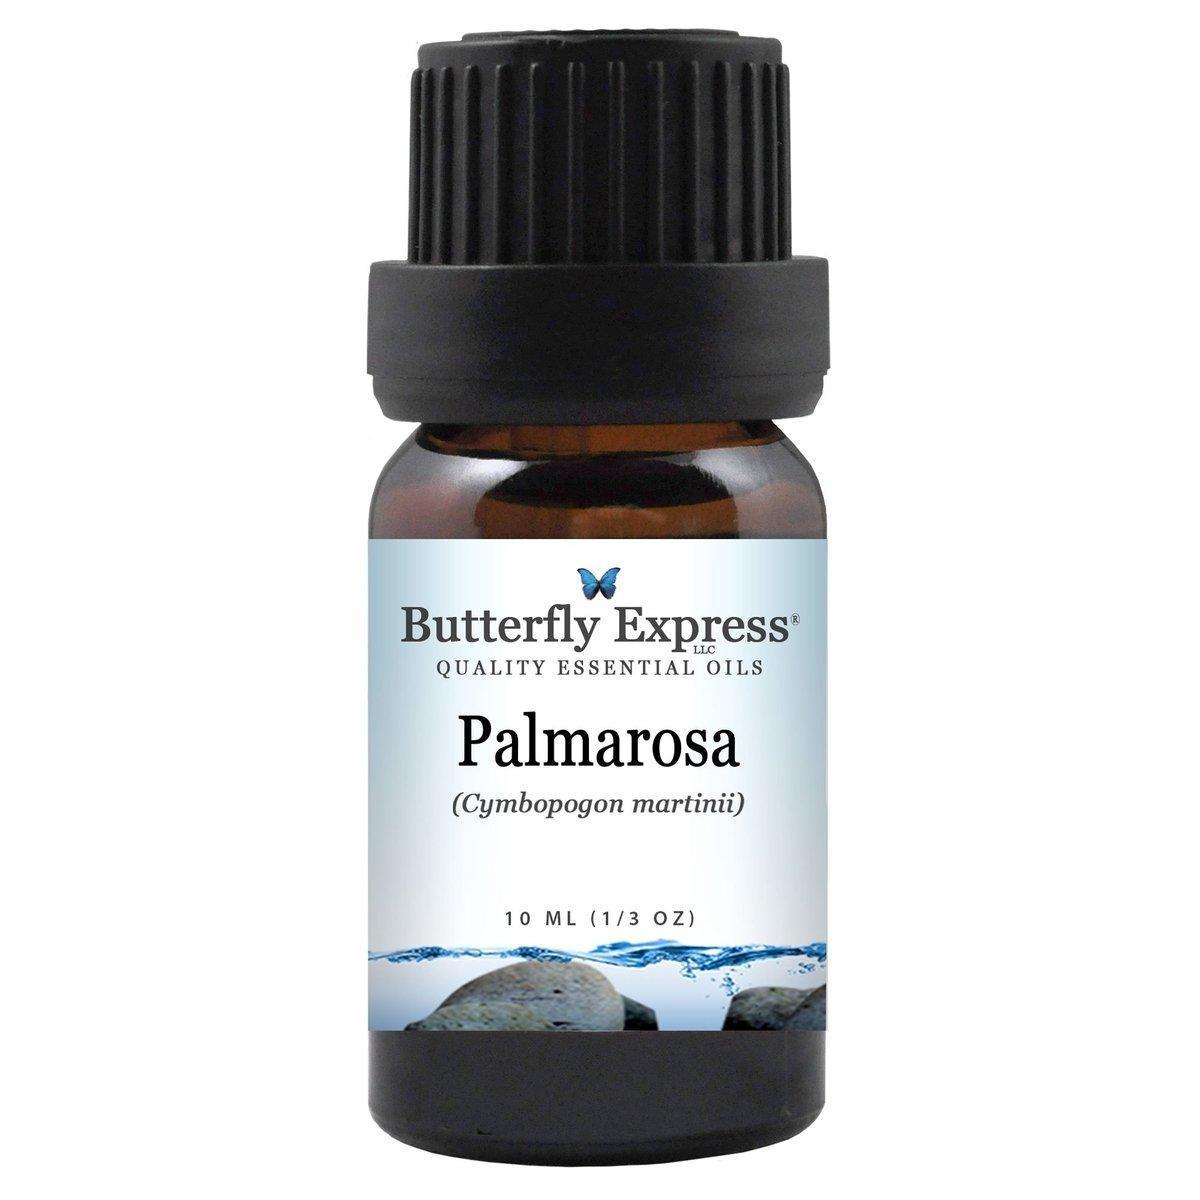 Palmarosa essential oils